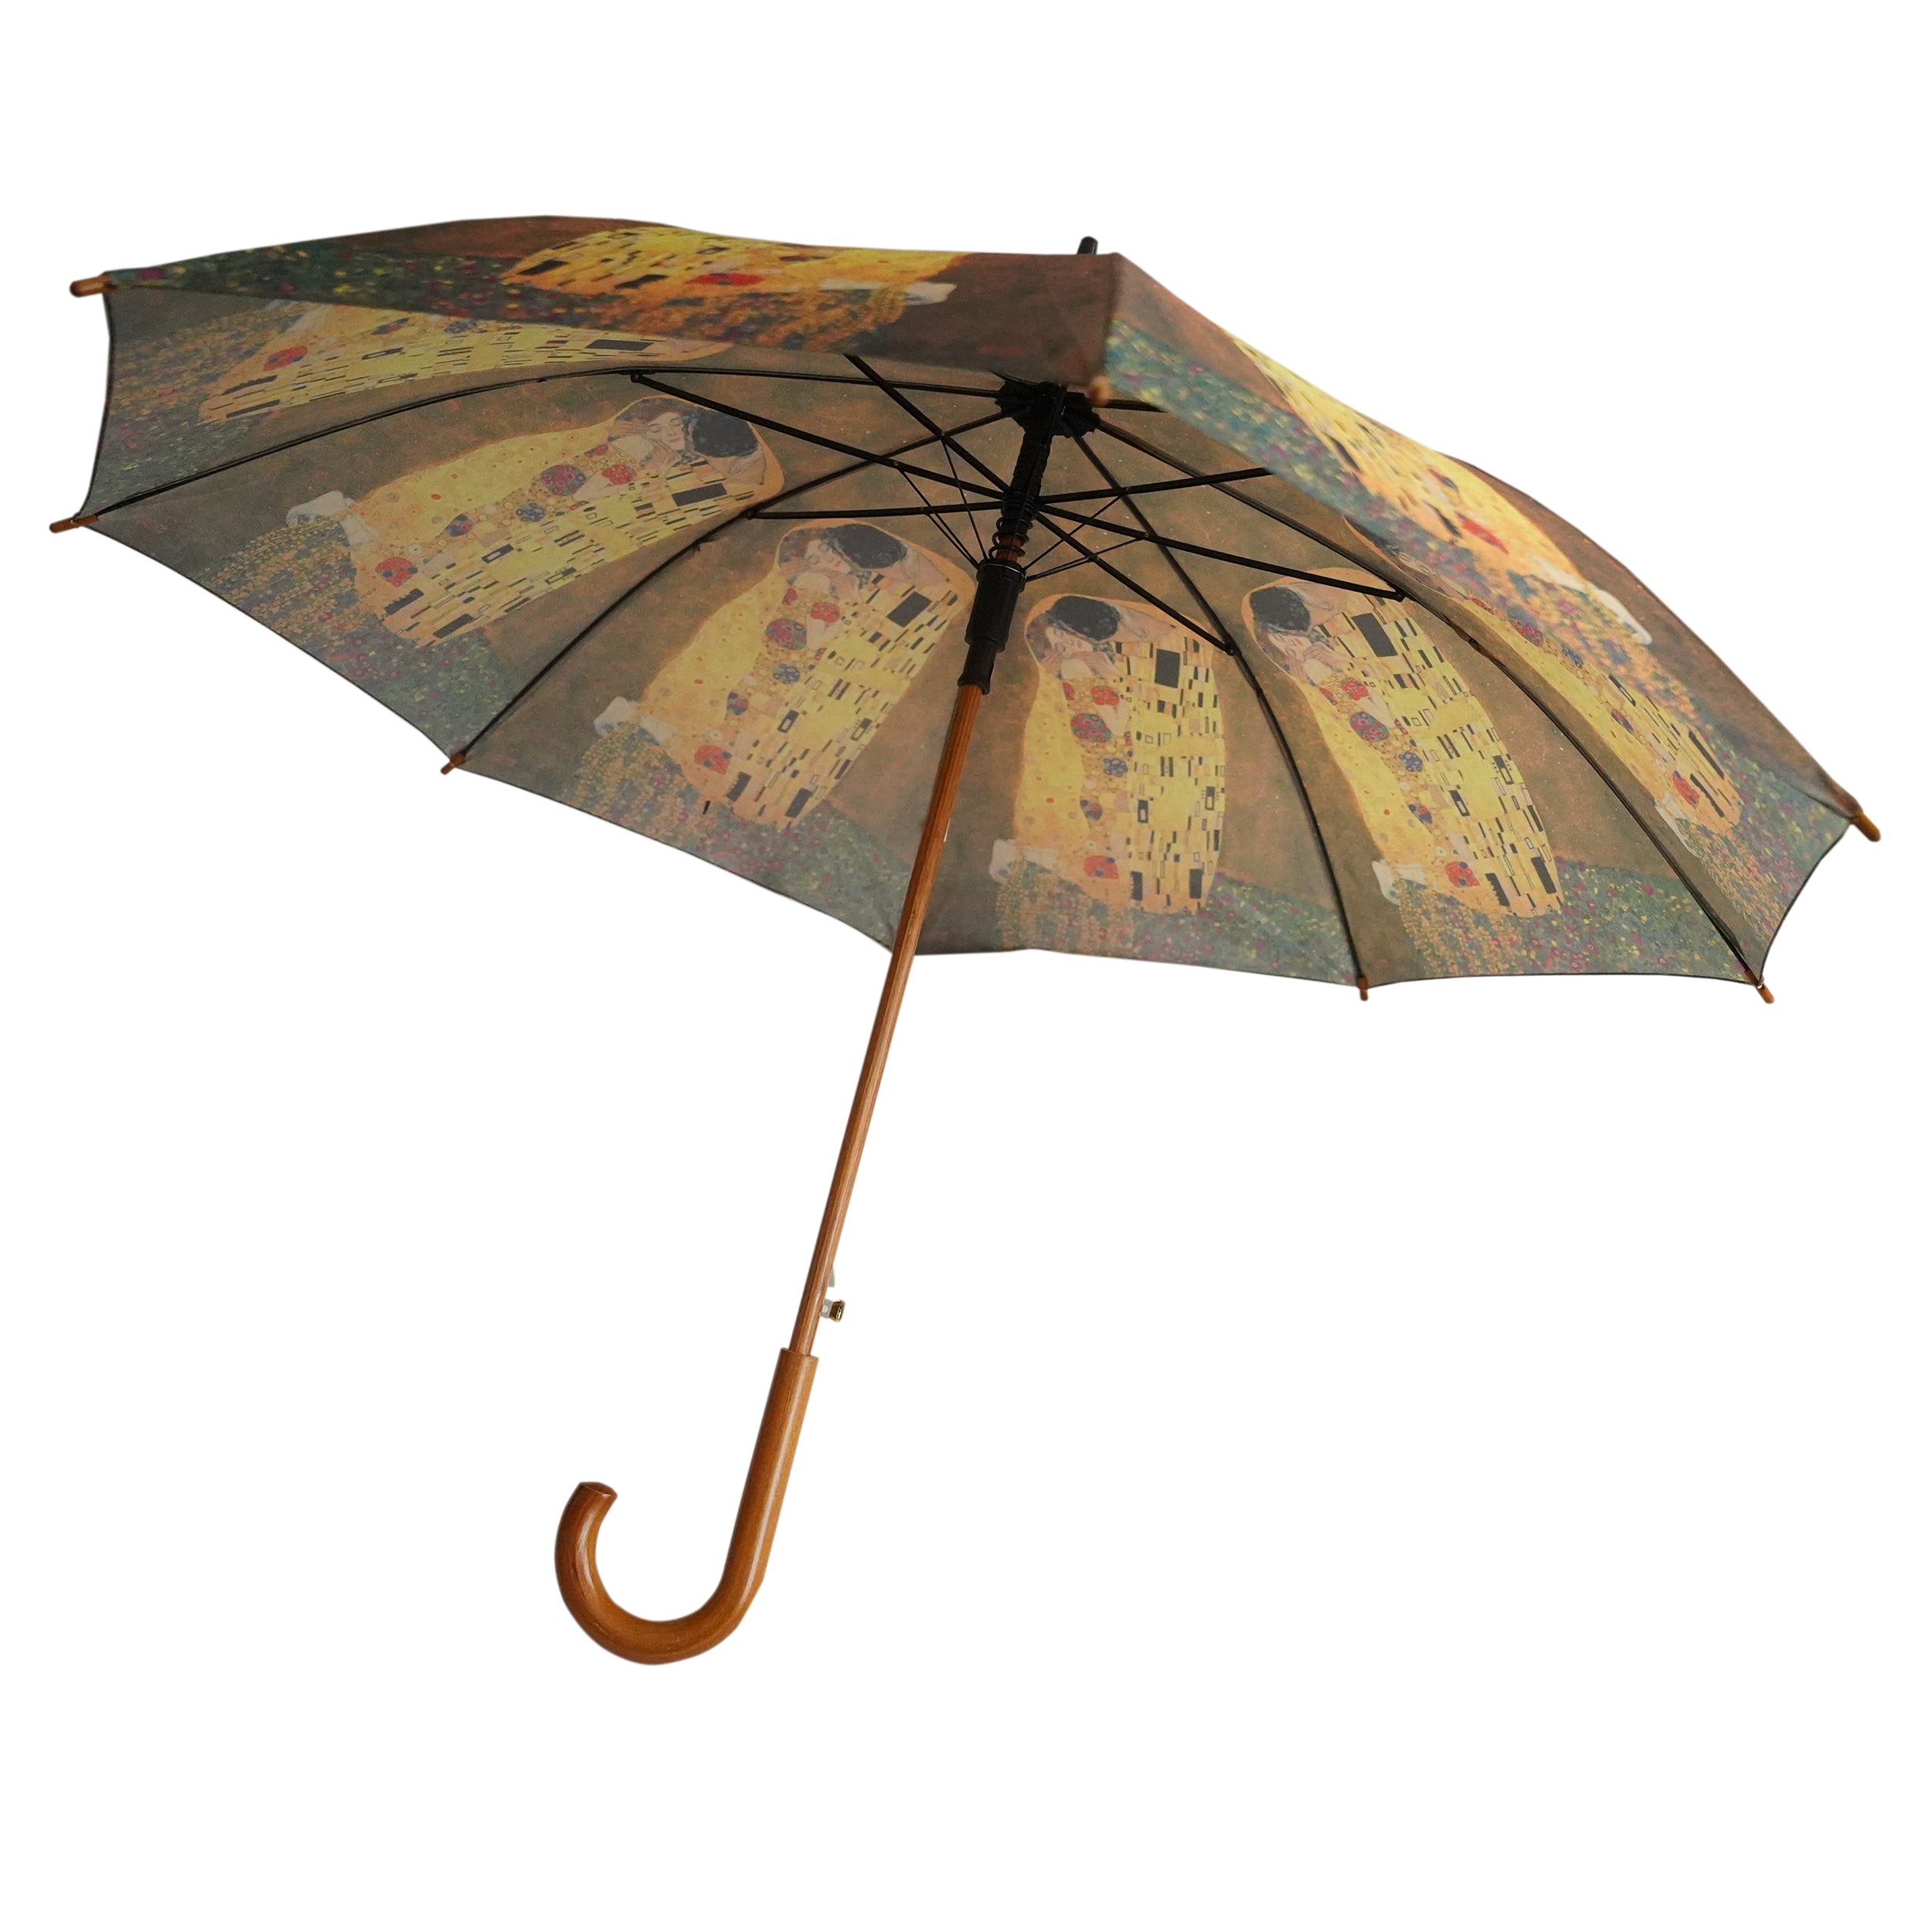 Gustav Klimt's "The Kiss" Wooden Stick Umbrella